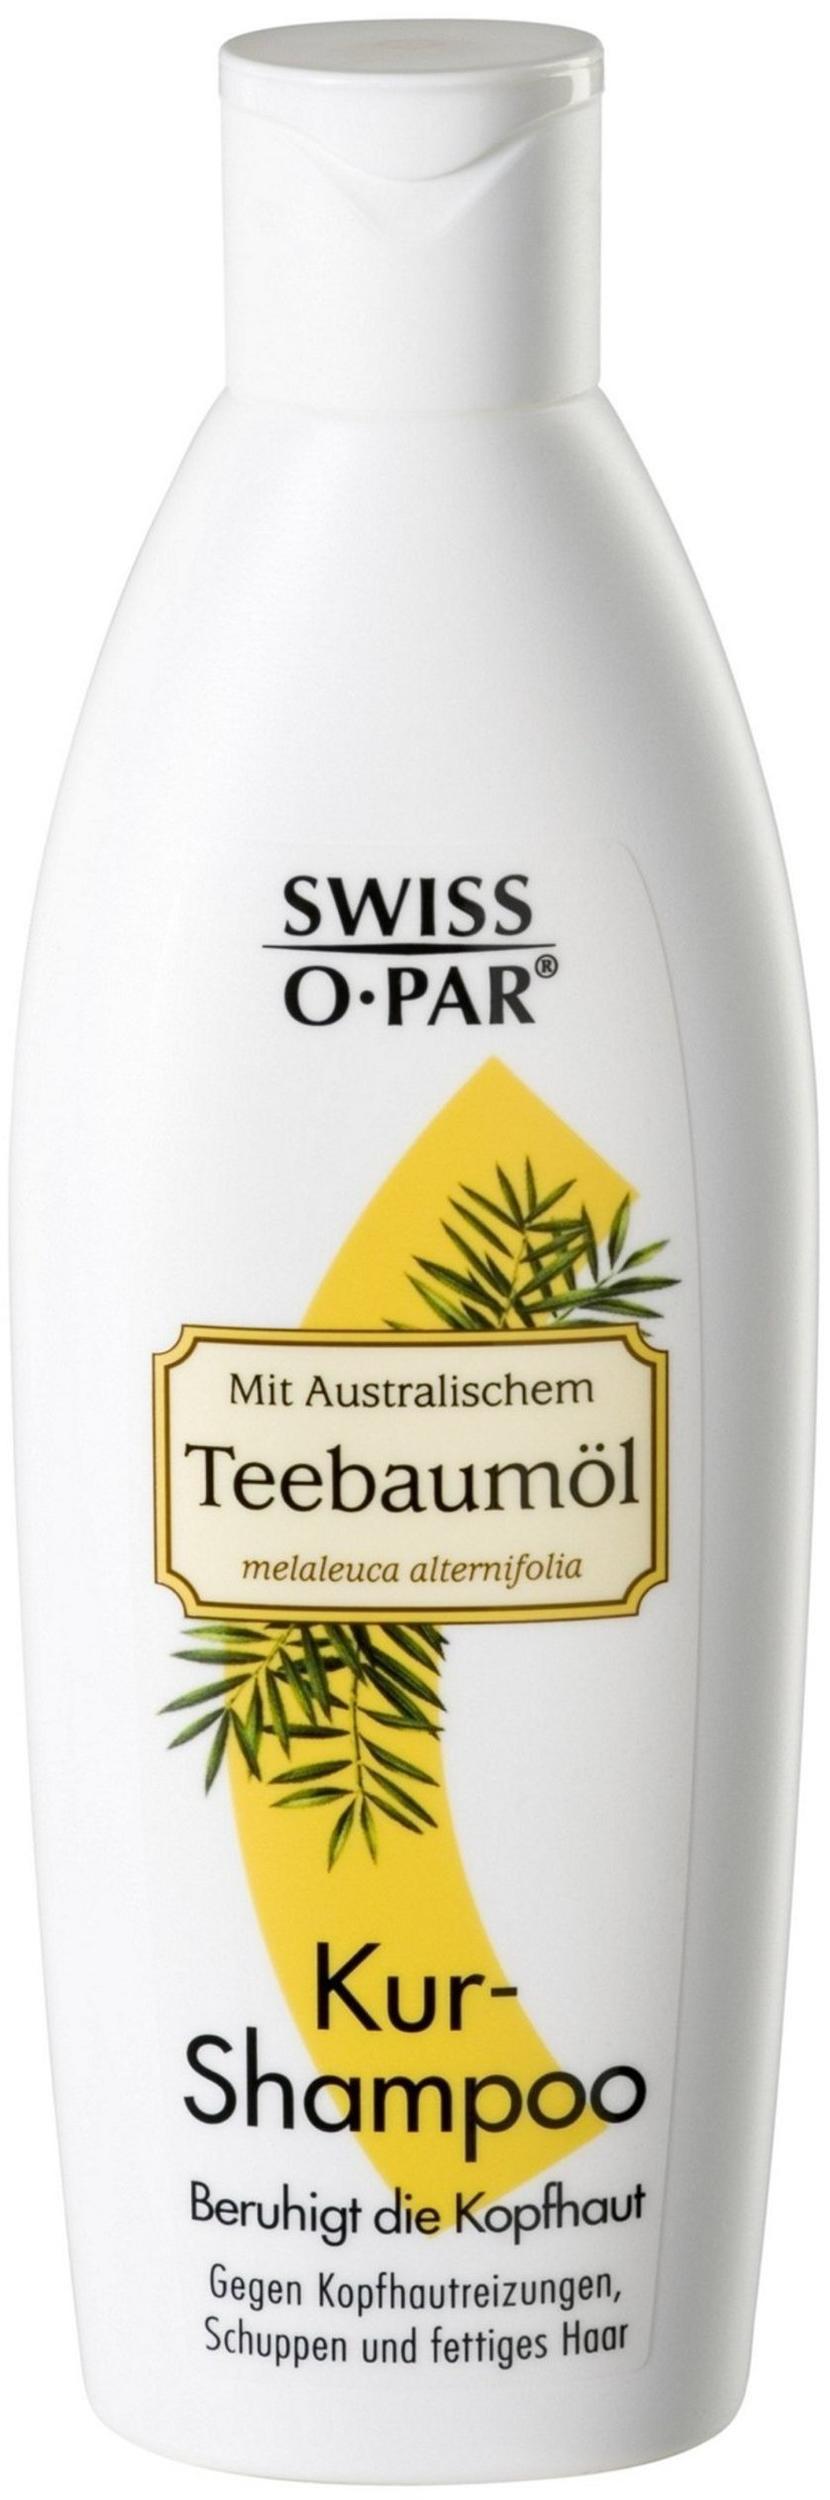 Swiss O Par Teebaumöl Shampoo (250ml) Erfahrungen 4.4/5 Sternen